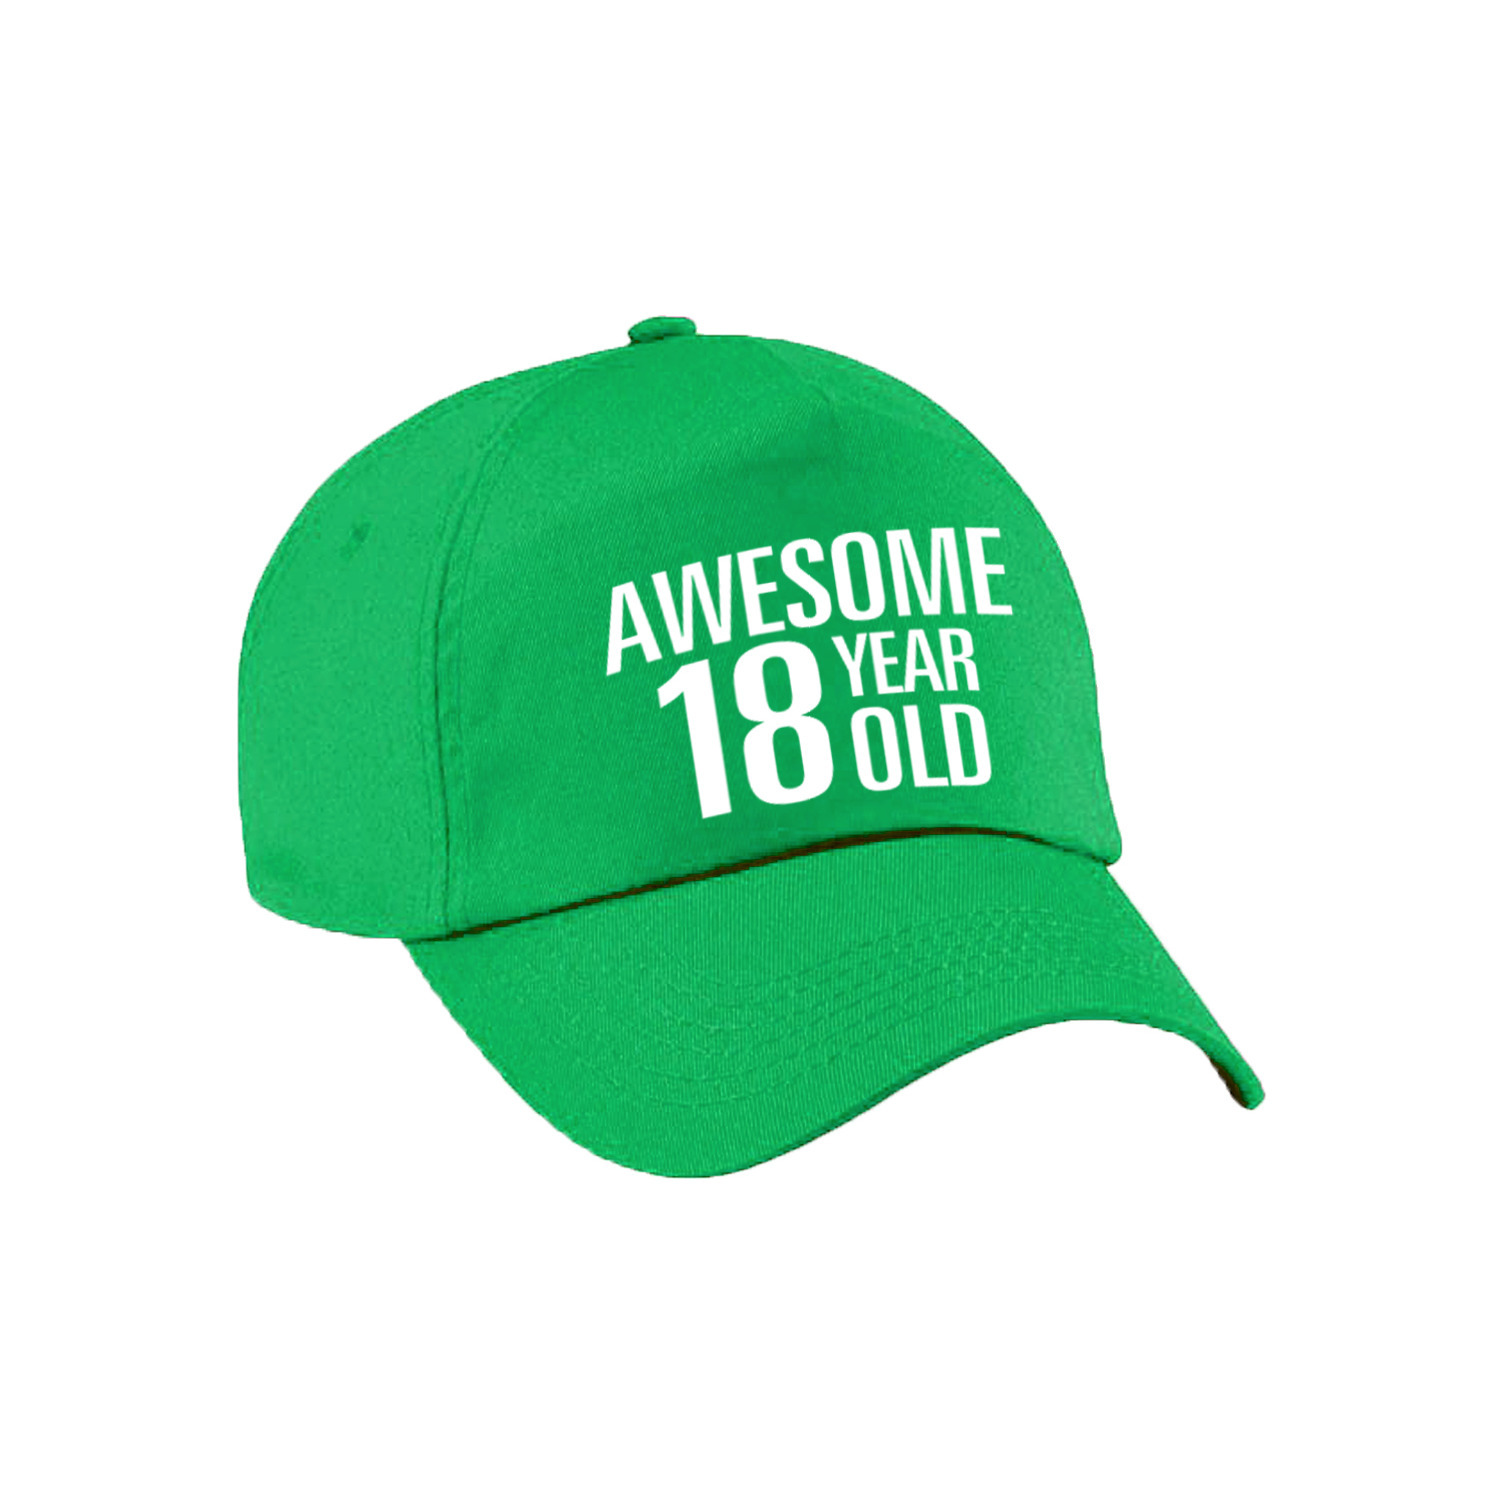 Awesome 18 year old verjaardag pet / cap groen voor dames en heren